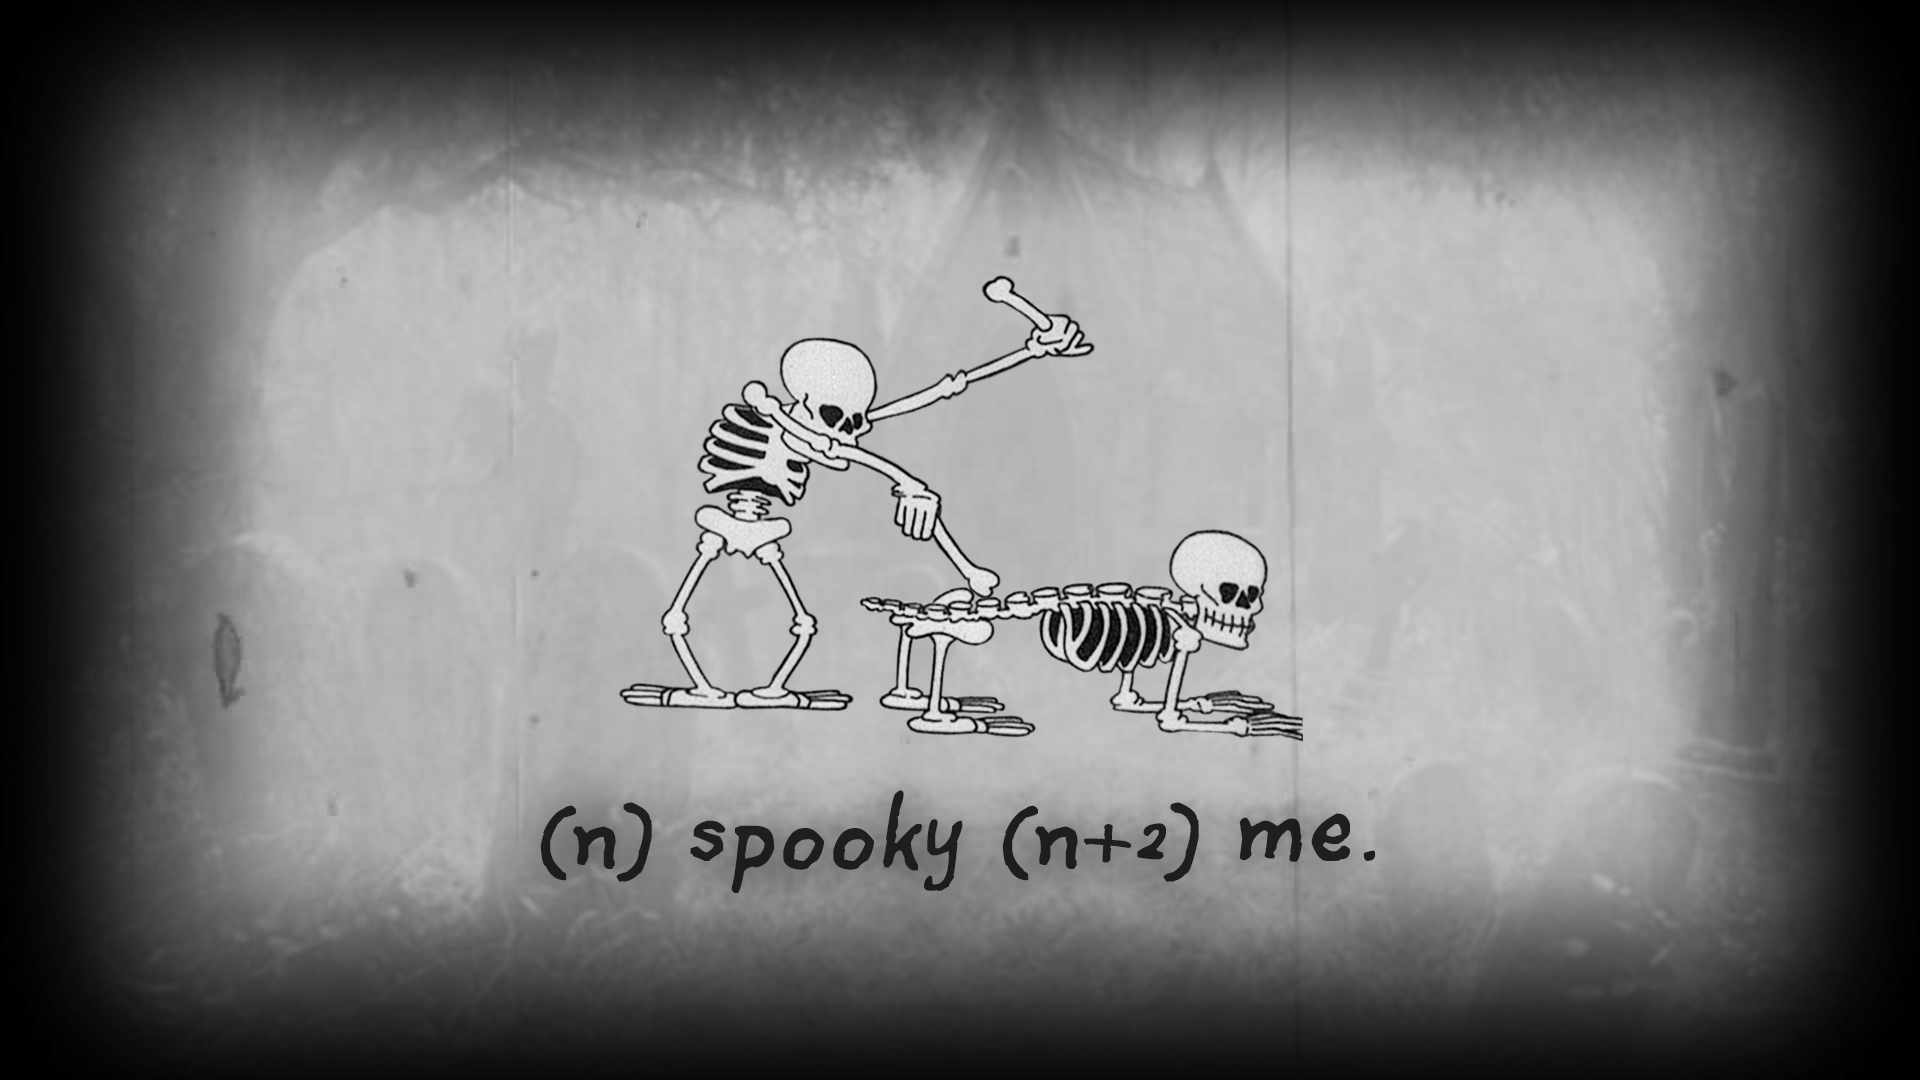 General 1920x1080 humor bones skeleton spooky gray gray background skull